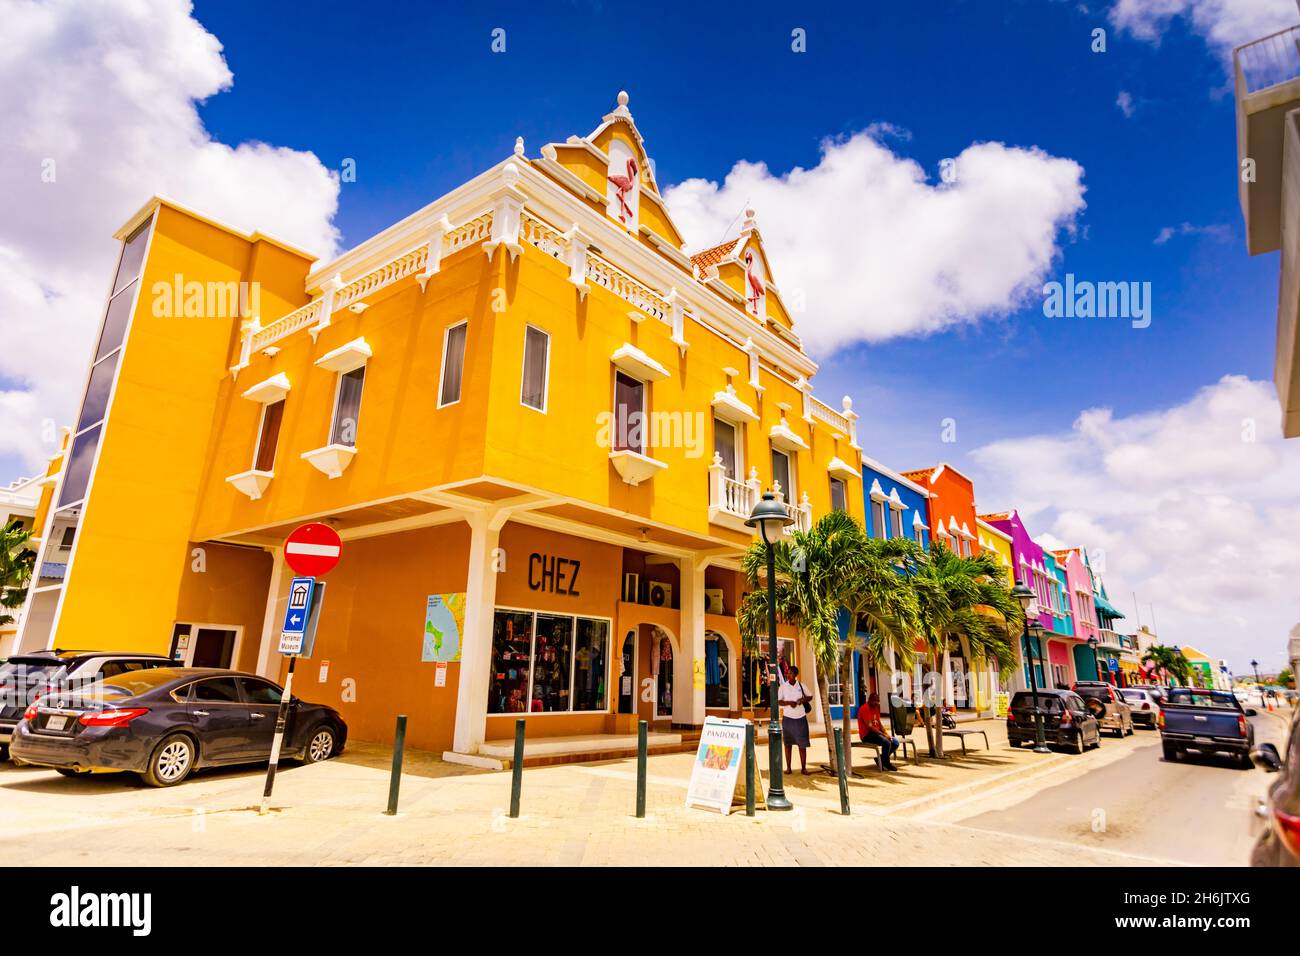 Gli splendidi edifici colorati nel centro di Kralendijk, Bonaire, Antille Olandesi, Caraibi, America Centrale Foto Stock